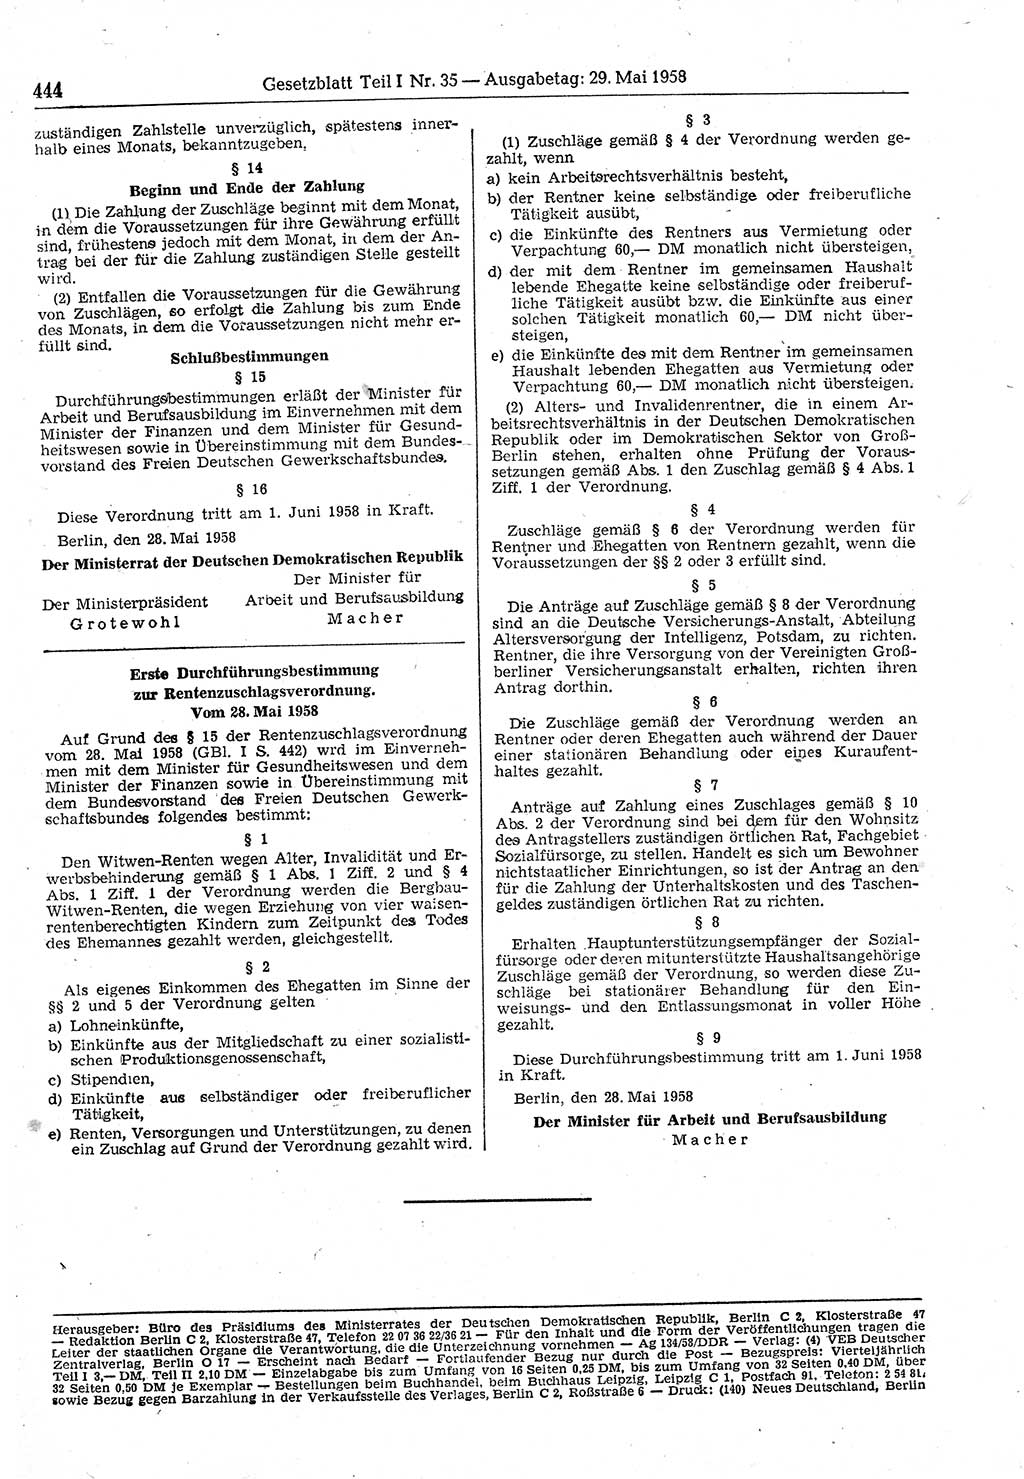 Gesetzblatt (GBl.) der Deutschen Demokratischen Republik (DDR) Teil Ⅰ 1958, Seite 444 (GBl. DDR Ⅰ 1958, S. 444)